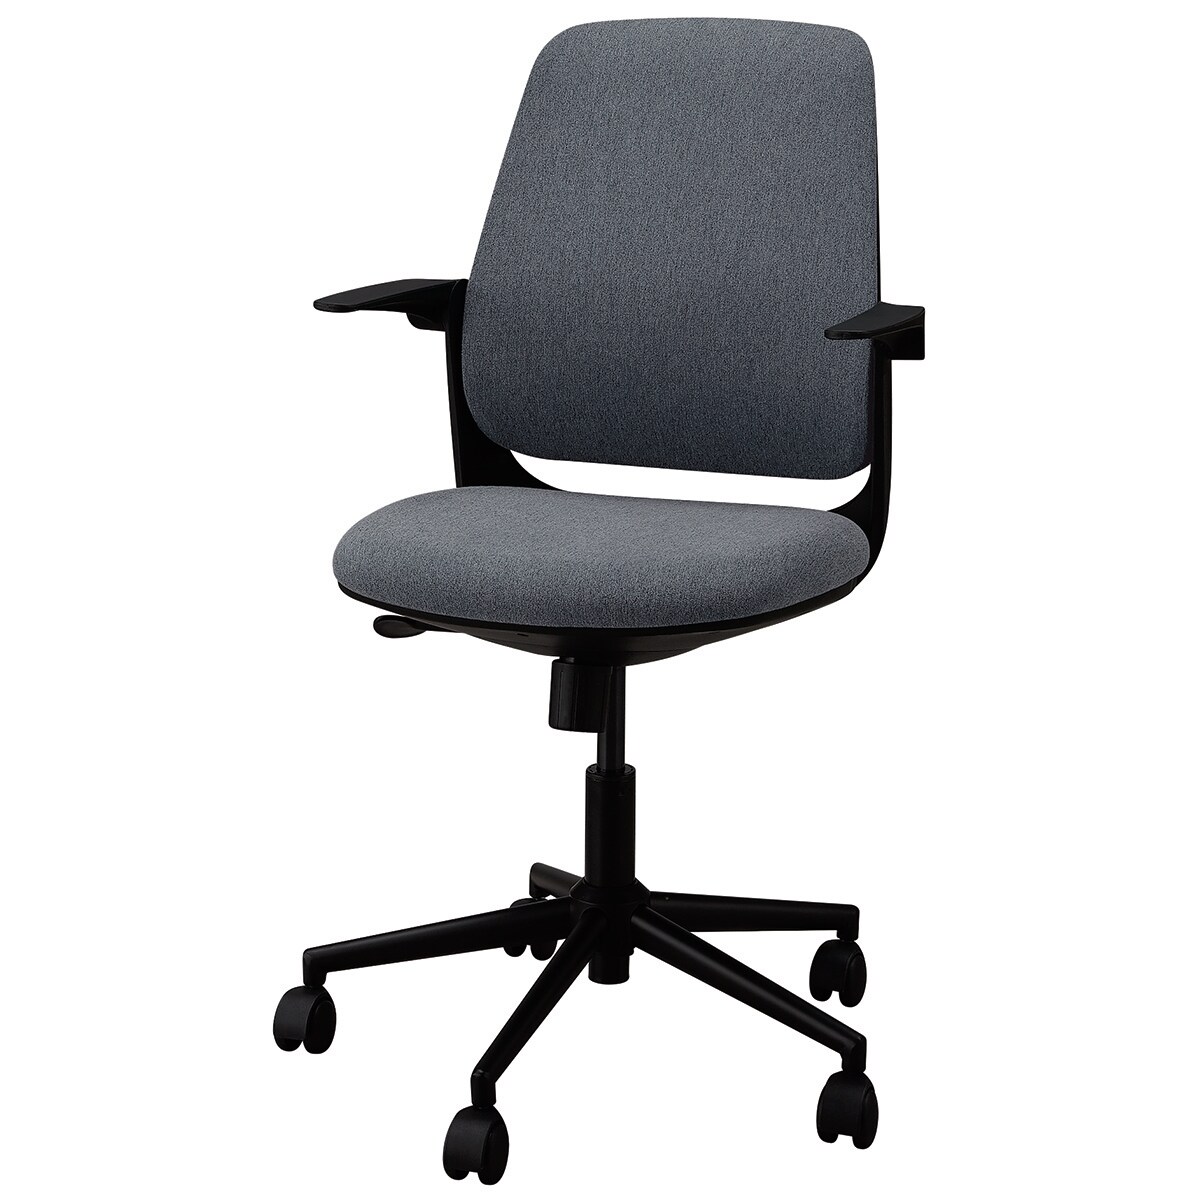 ニトリのオフィスチェア(MS7008 GY)   【1年保証】(チェア・椅子)